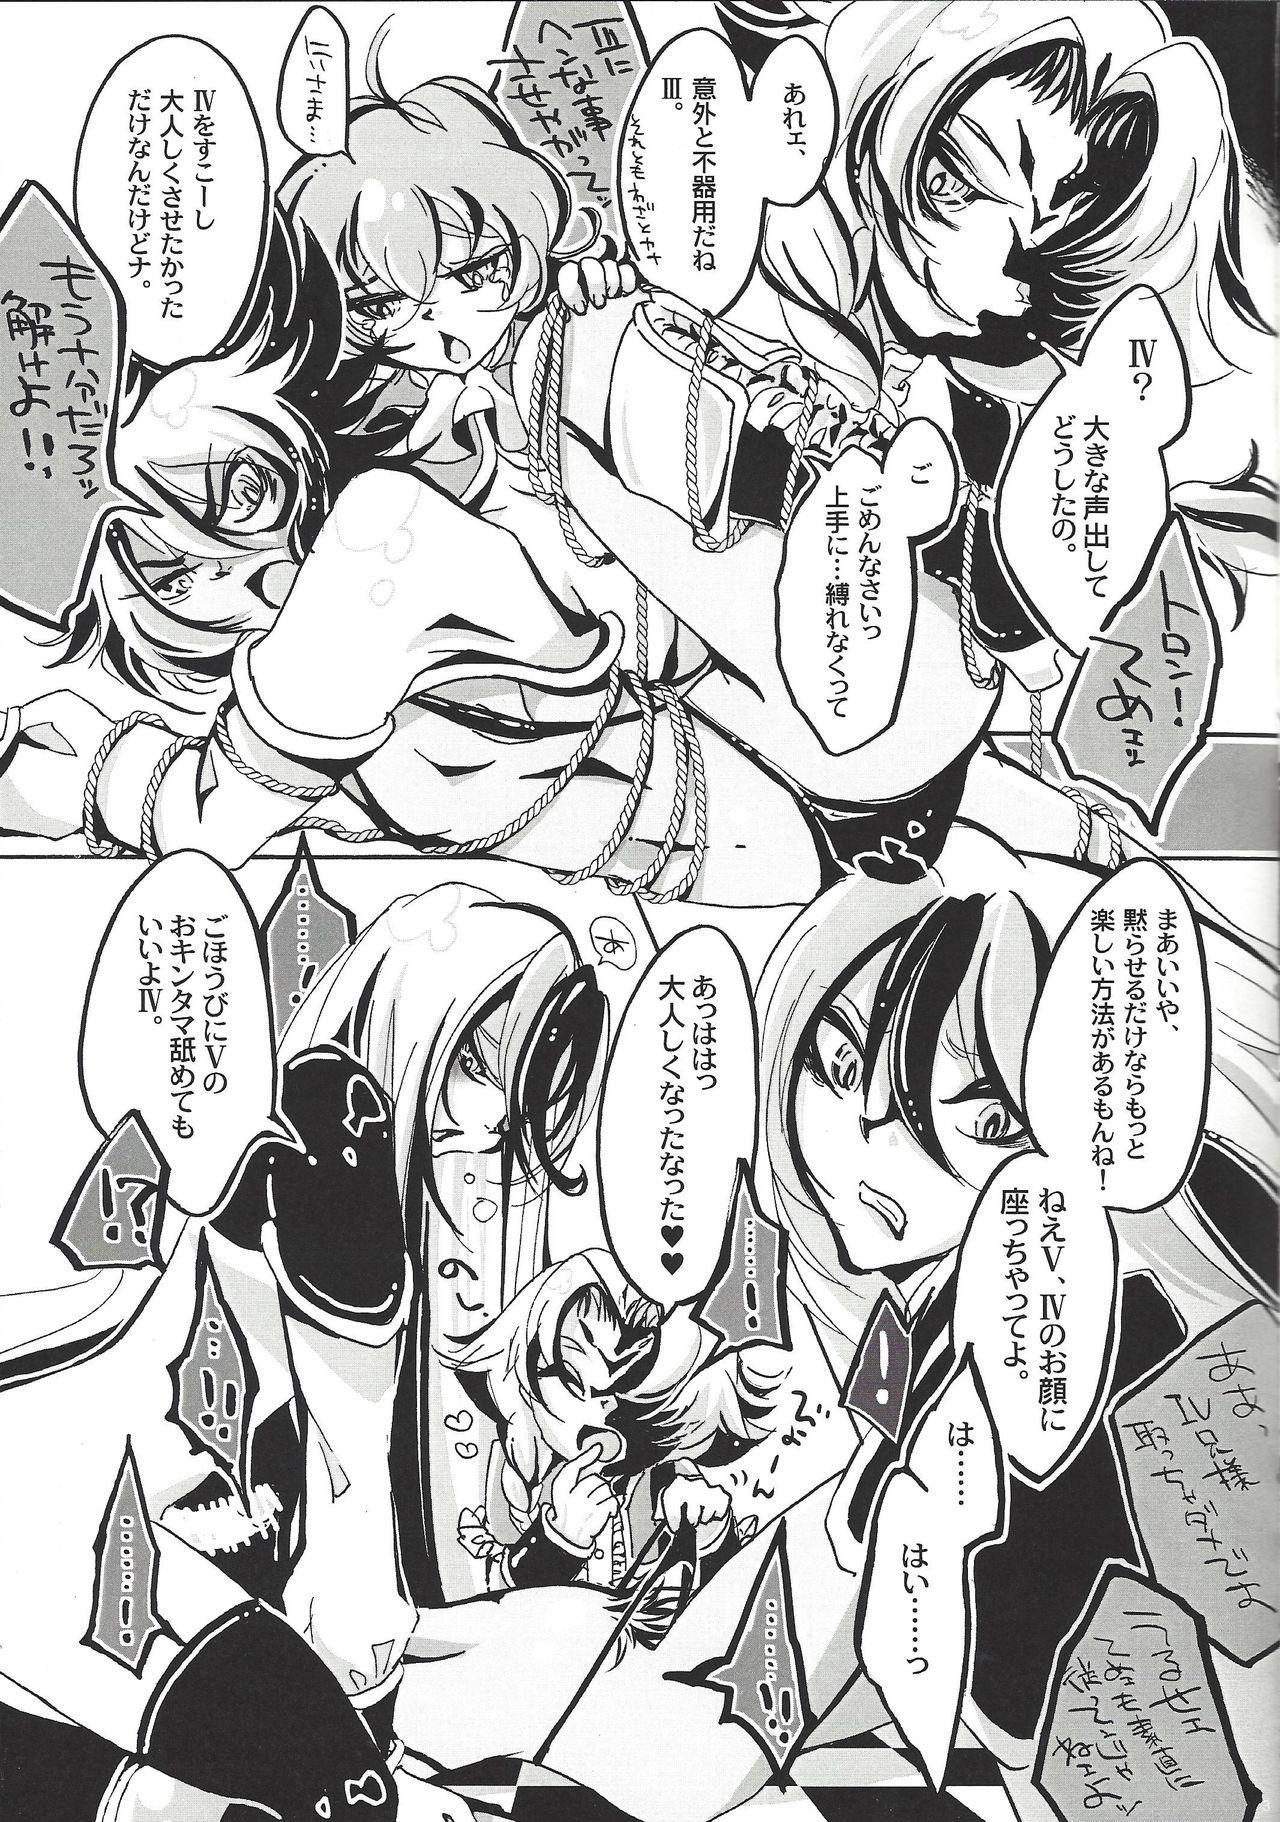 Men Bokura, zetsubo no mayoigo ni natte - Yu gi oh zexal Kissing - Page 4